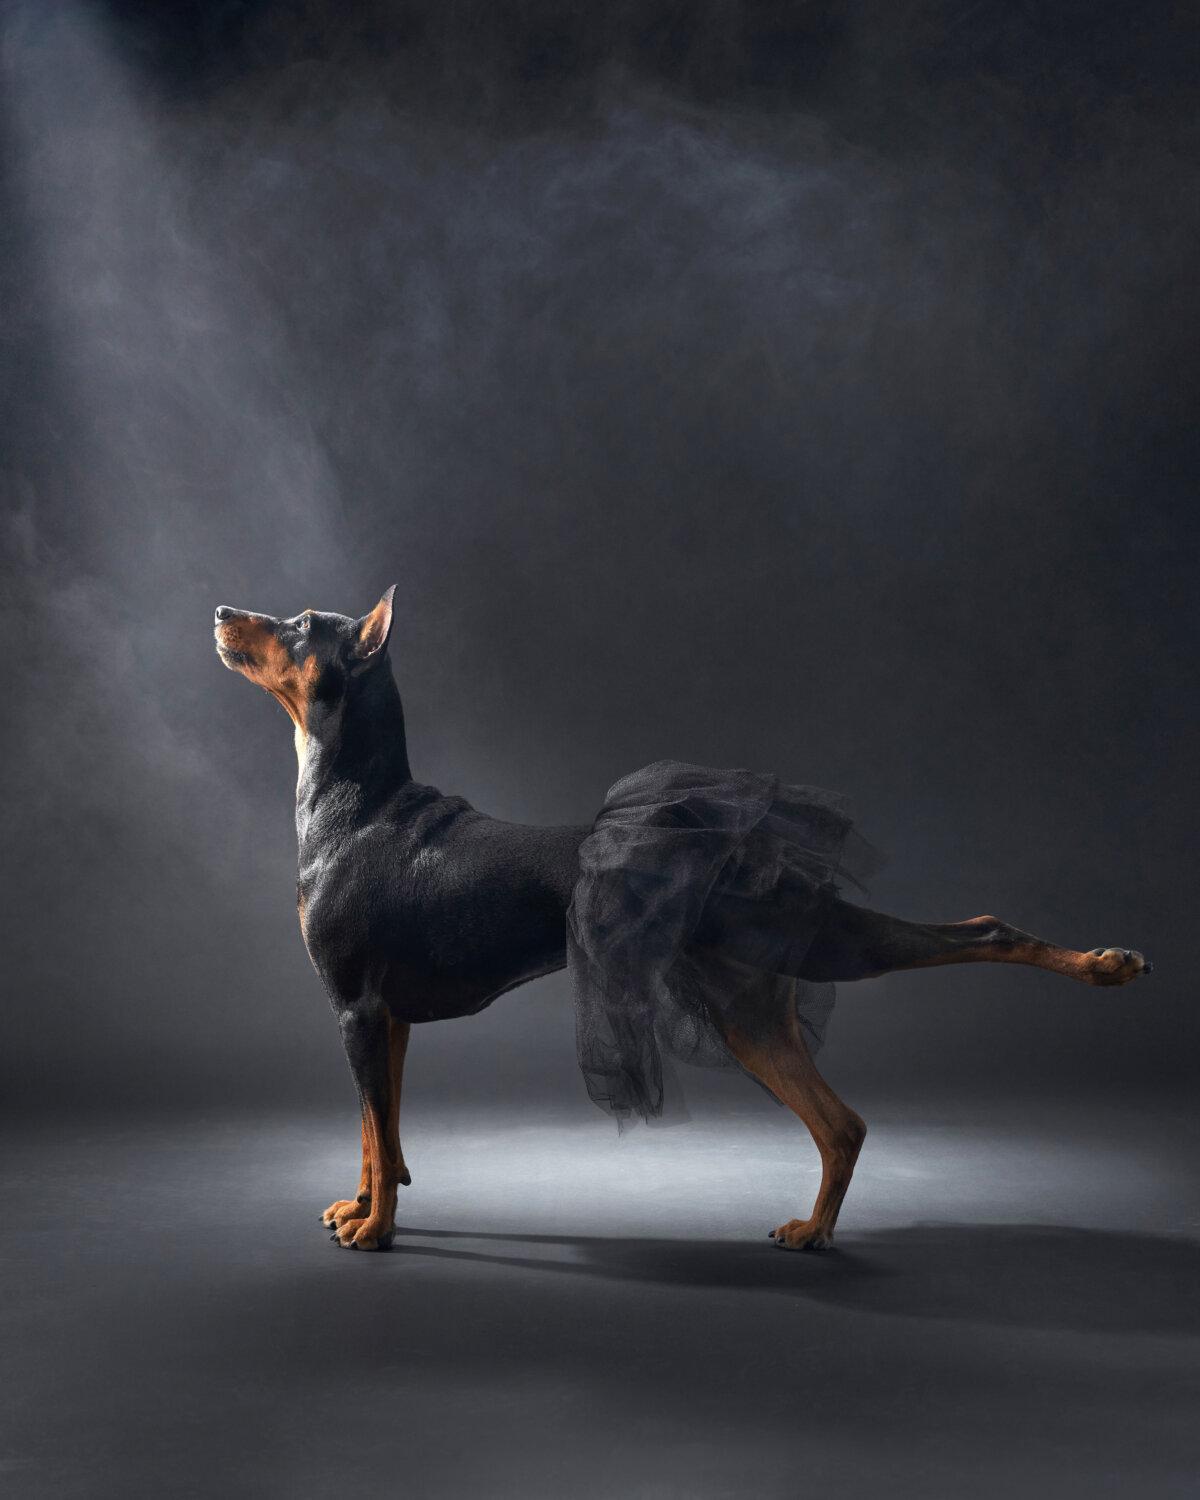 "Ballerina," by Anna Averianova. (Courtesy of Anna Averianova, Dog Photography Awards)